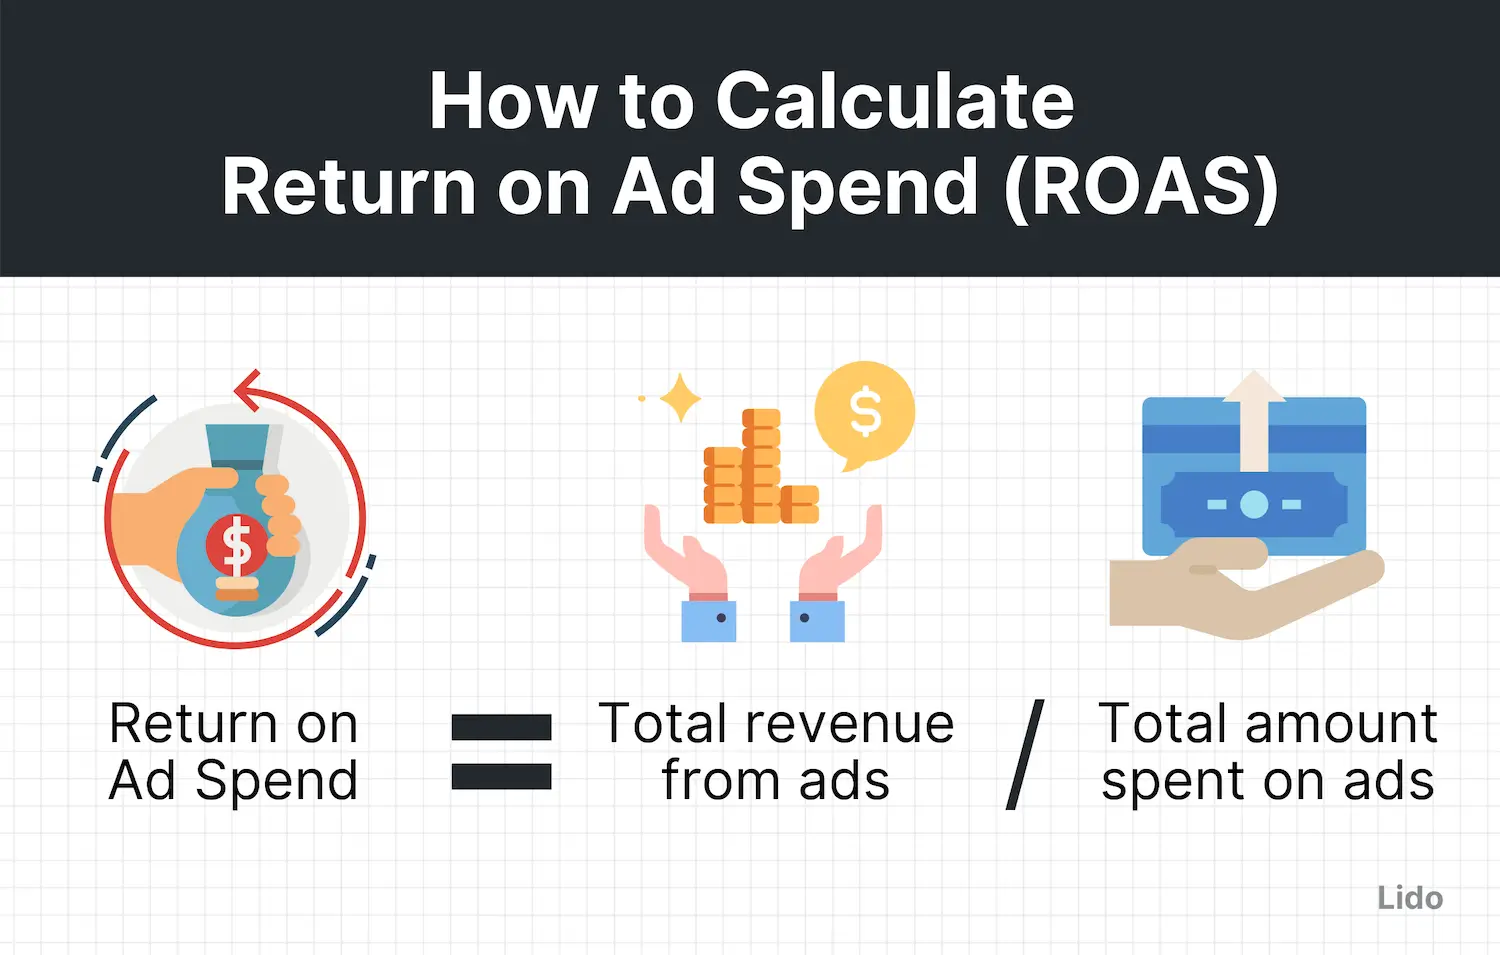 Return on Ad Spend (ROAS)